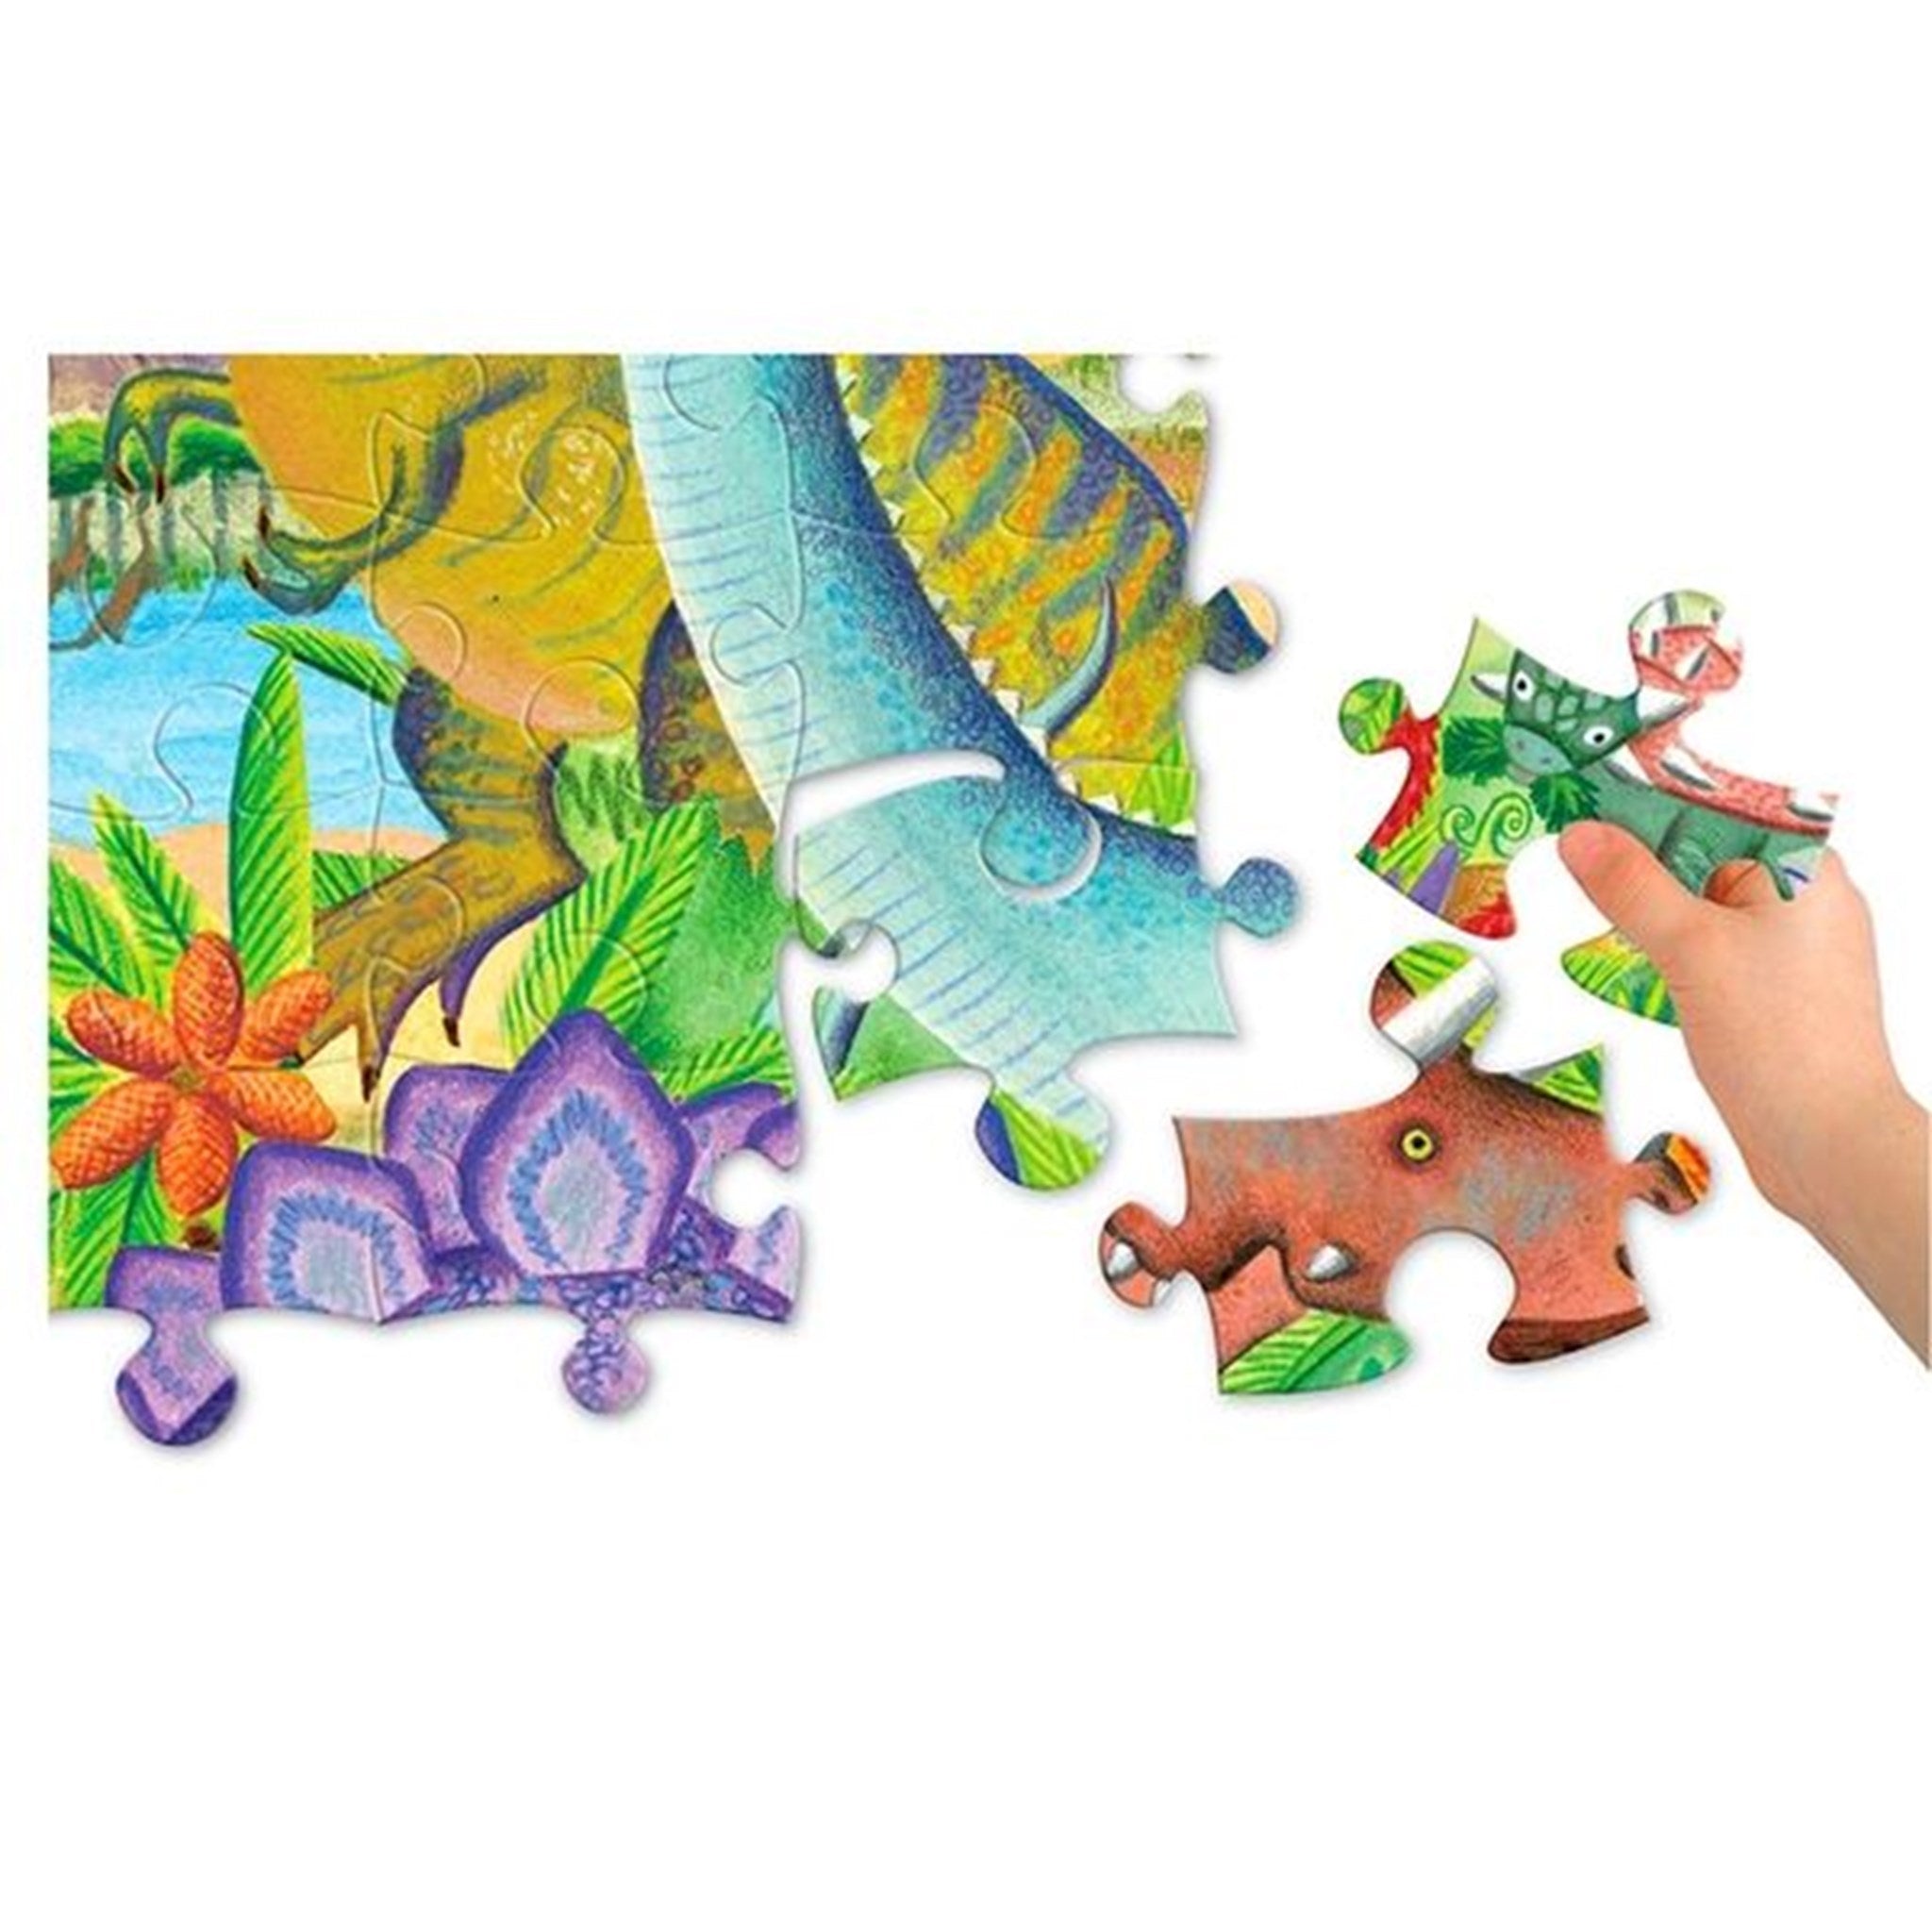 Eeboo Puzzle 100 Pieces - Dinosaurs 4